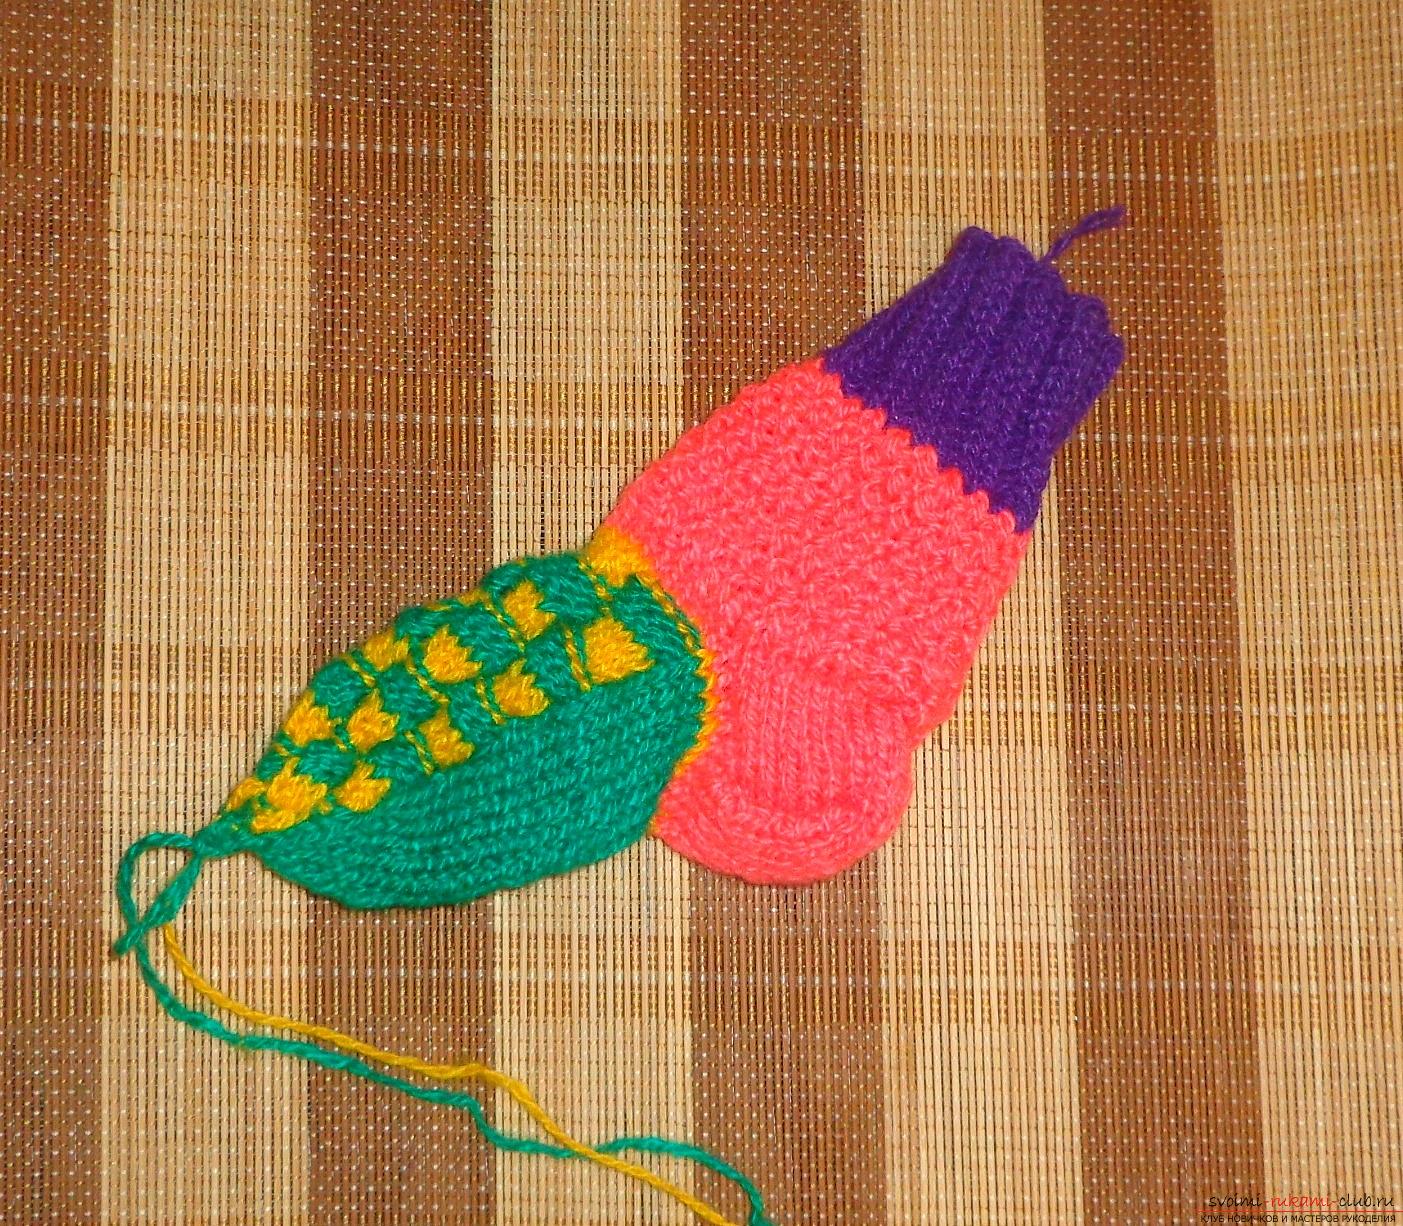 Фото к уроку вязания на спицах детских носочков 